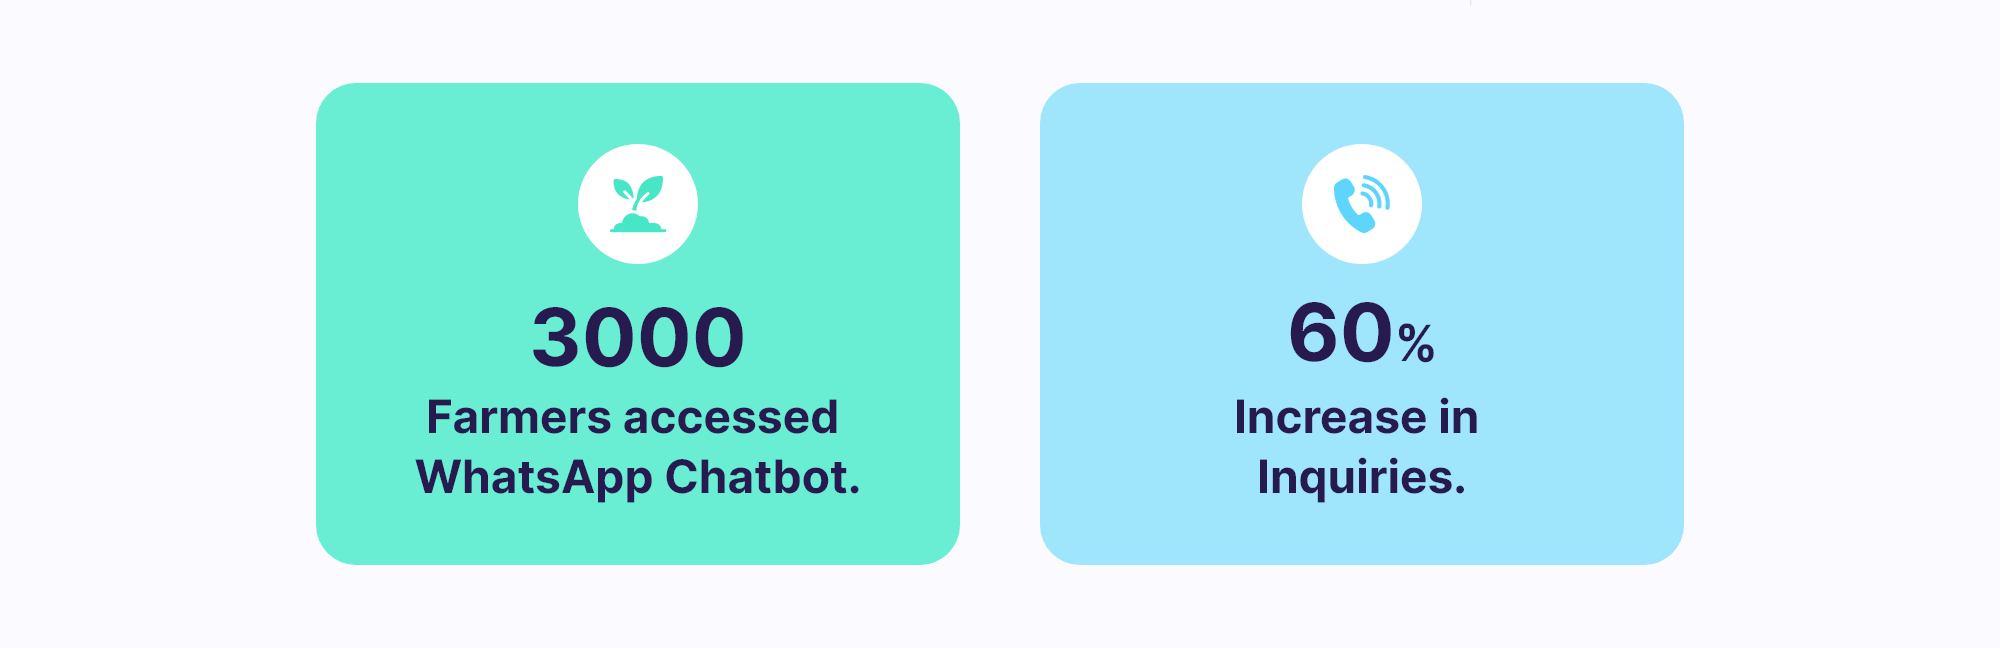 farmer whatsapp chatbot metrics